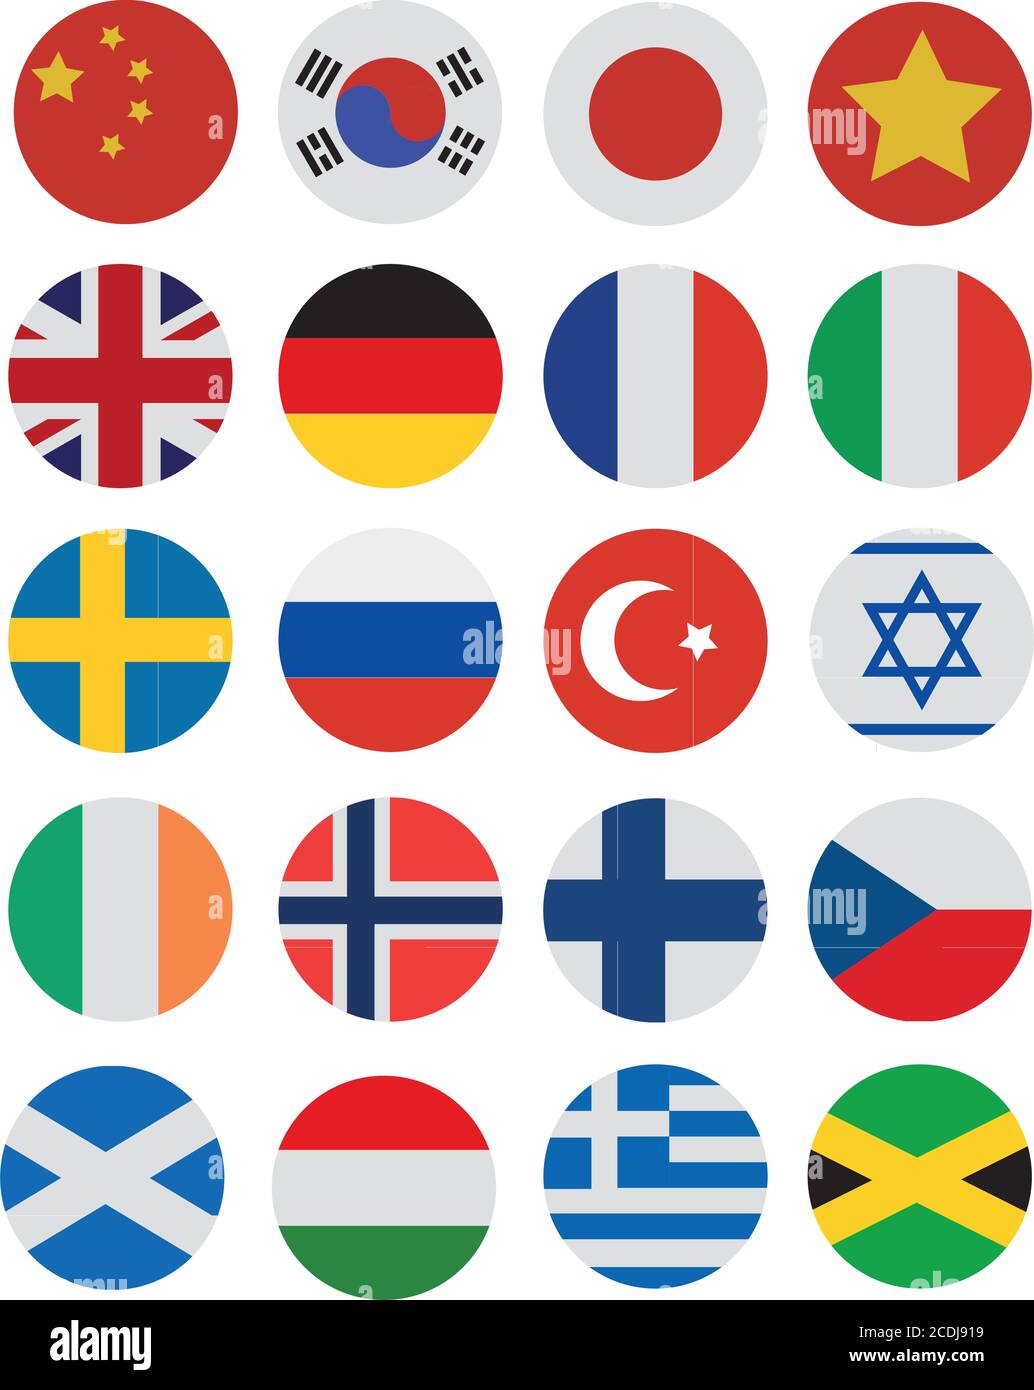 Flaggensymbole, Vektorgrafiken, 20 verschiedene Landesflagge Stock Vektor